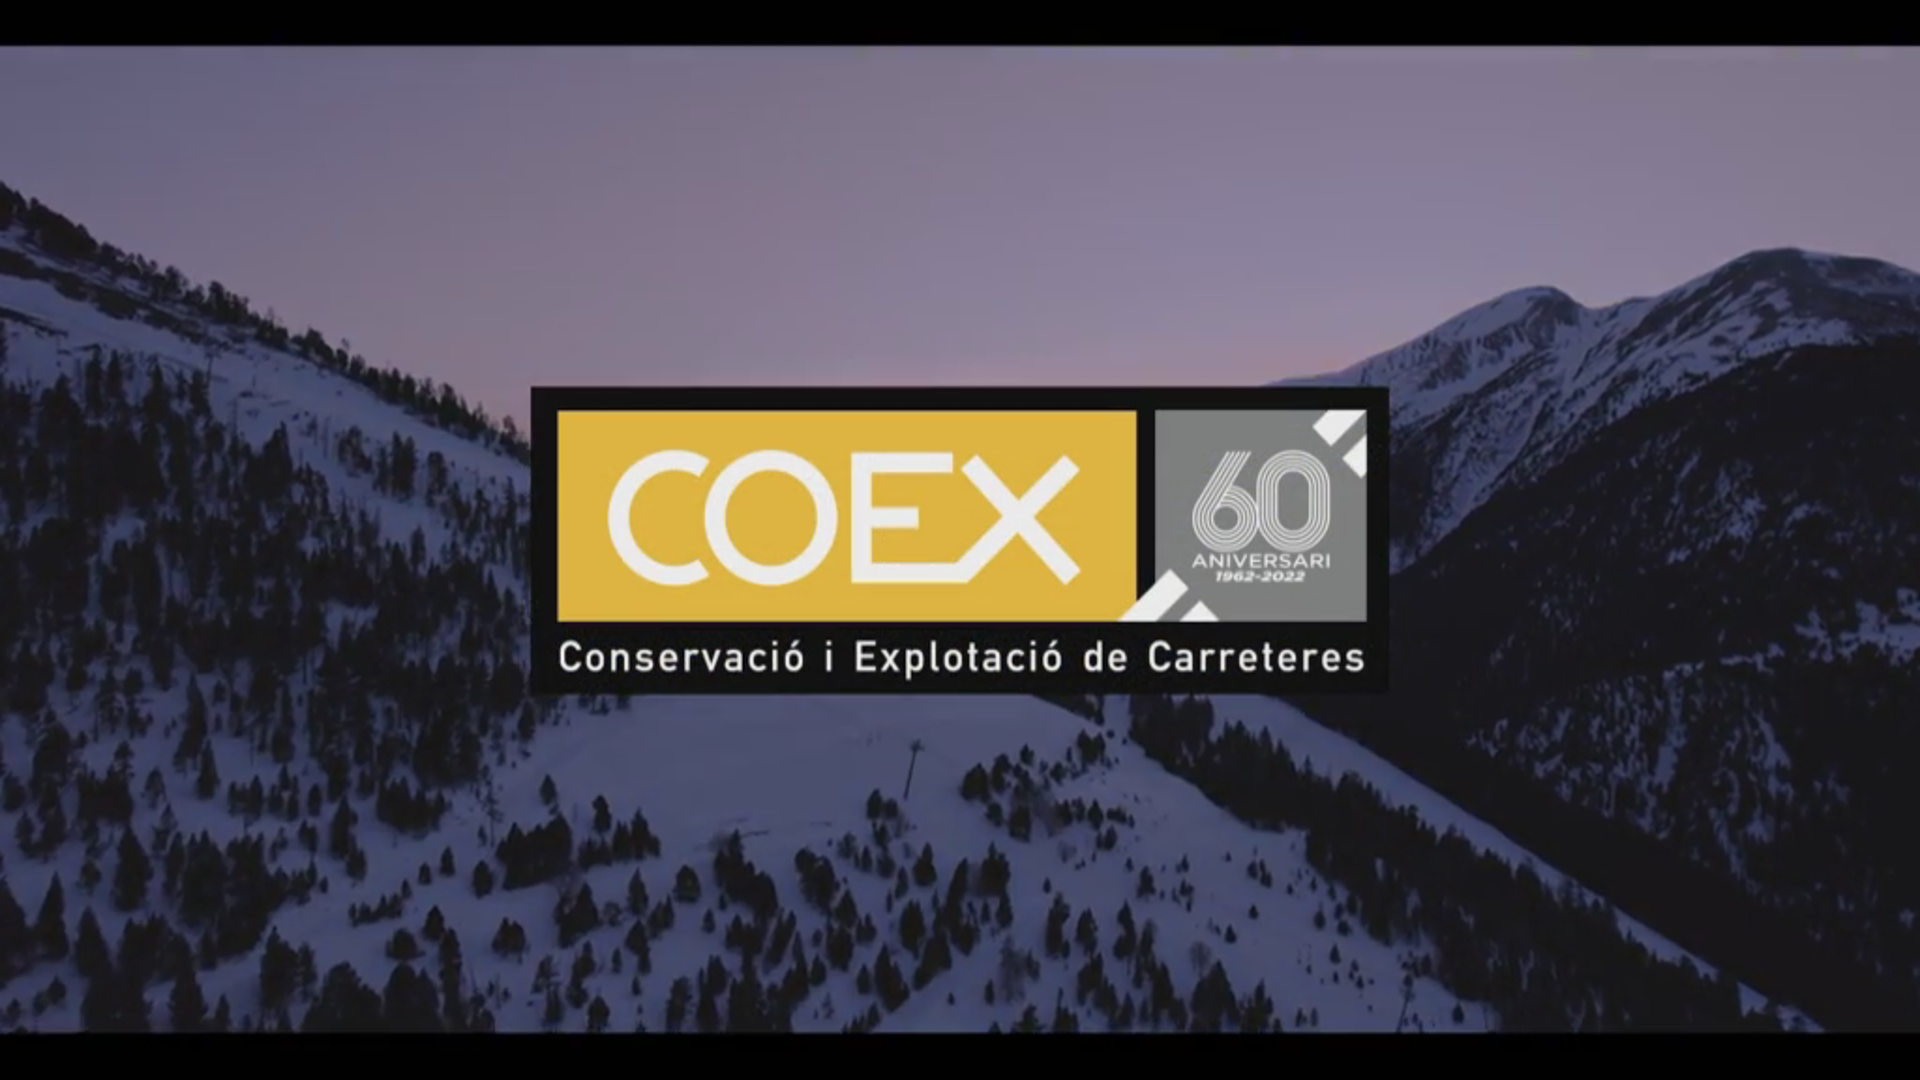 COEX 60 anys